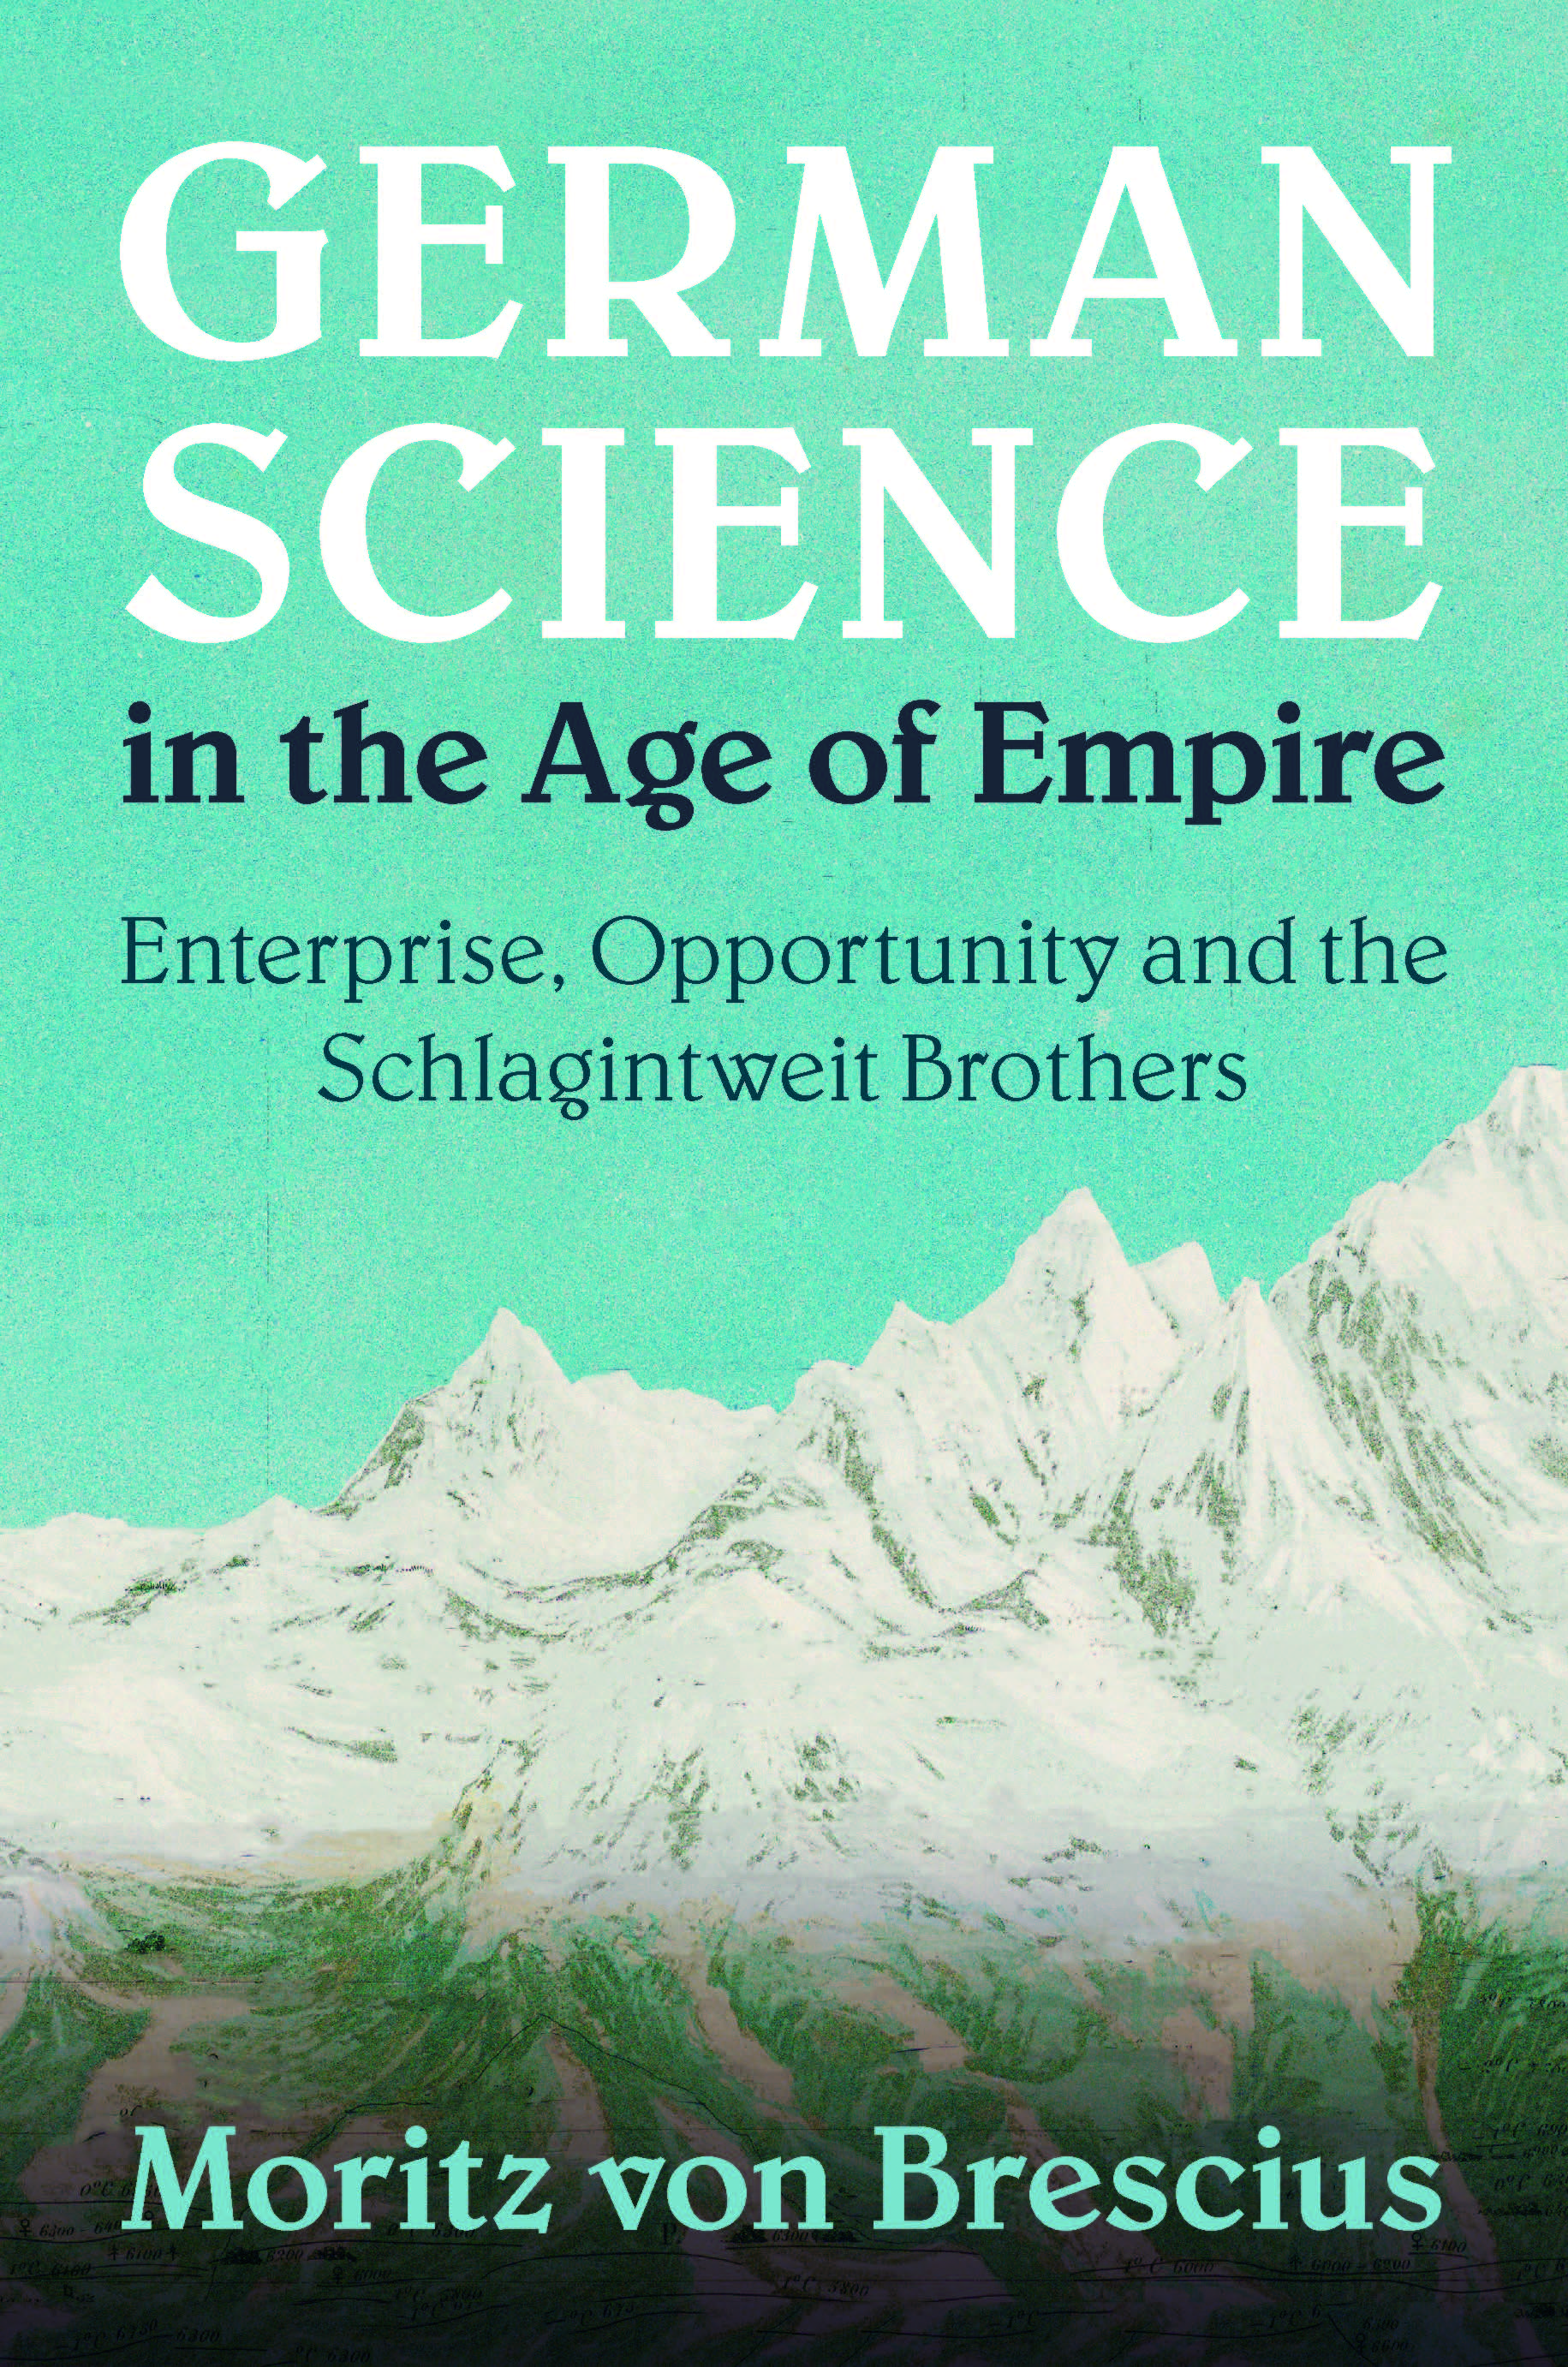 Buchcover «German Science in the Age of Empire: Enterprise, Opportunity and the Schlagintweit Brothers» von Moritz von Brescius, erschienen bei der Cambridge University Press.  © Cambridge University Press